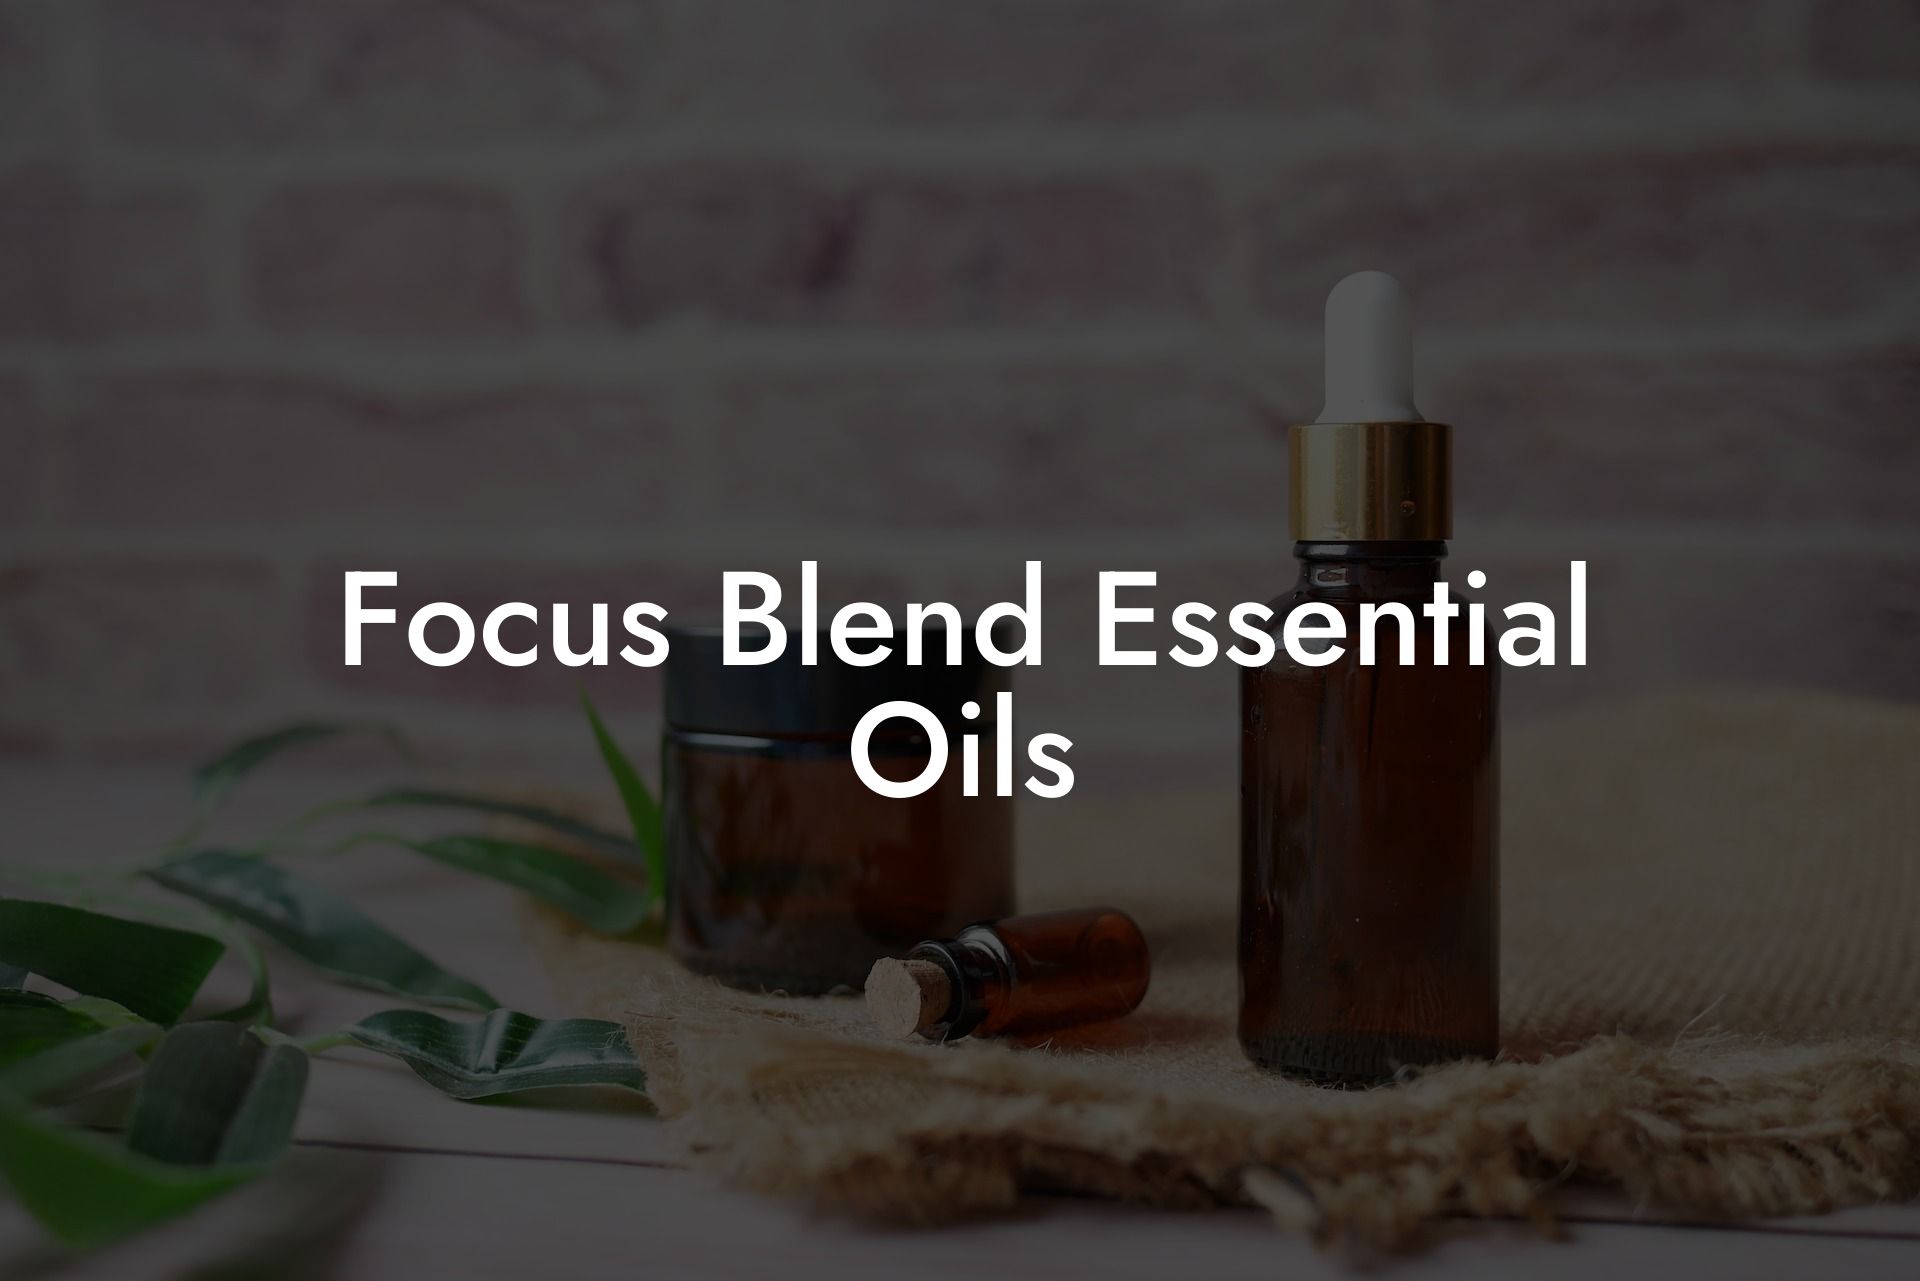 Focus Blend Essential Oils